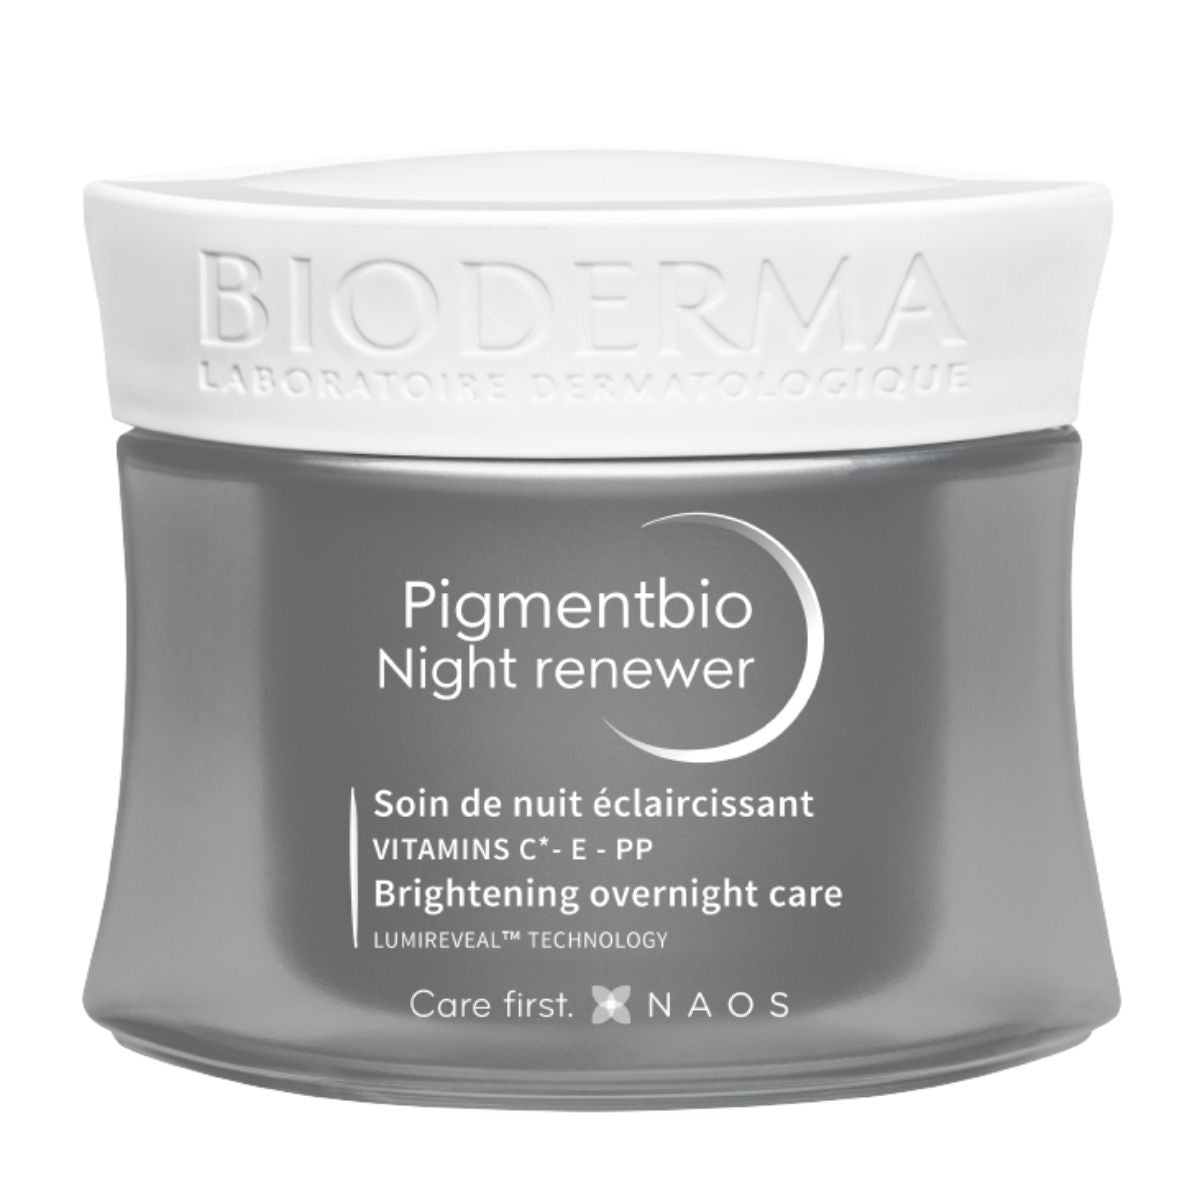 Bioderma Pigmentbio Night Renewer Cream